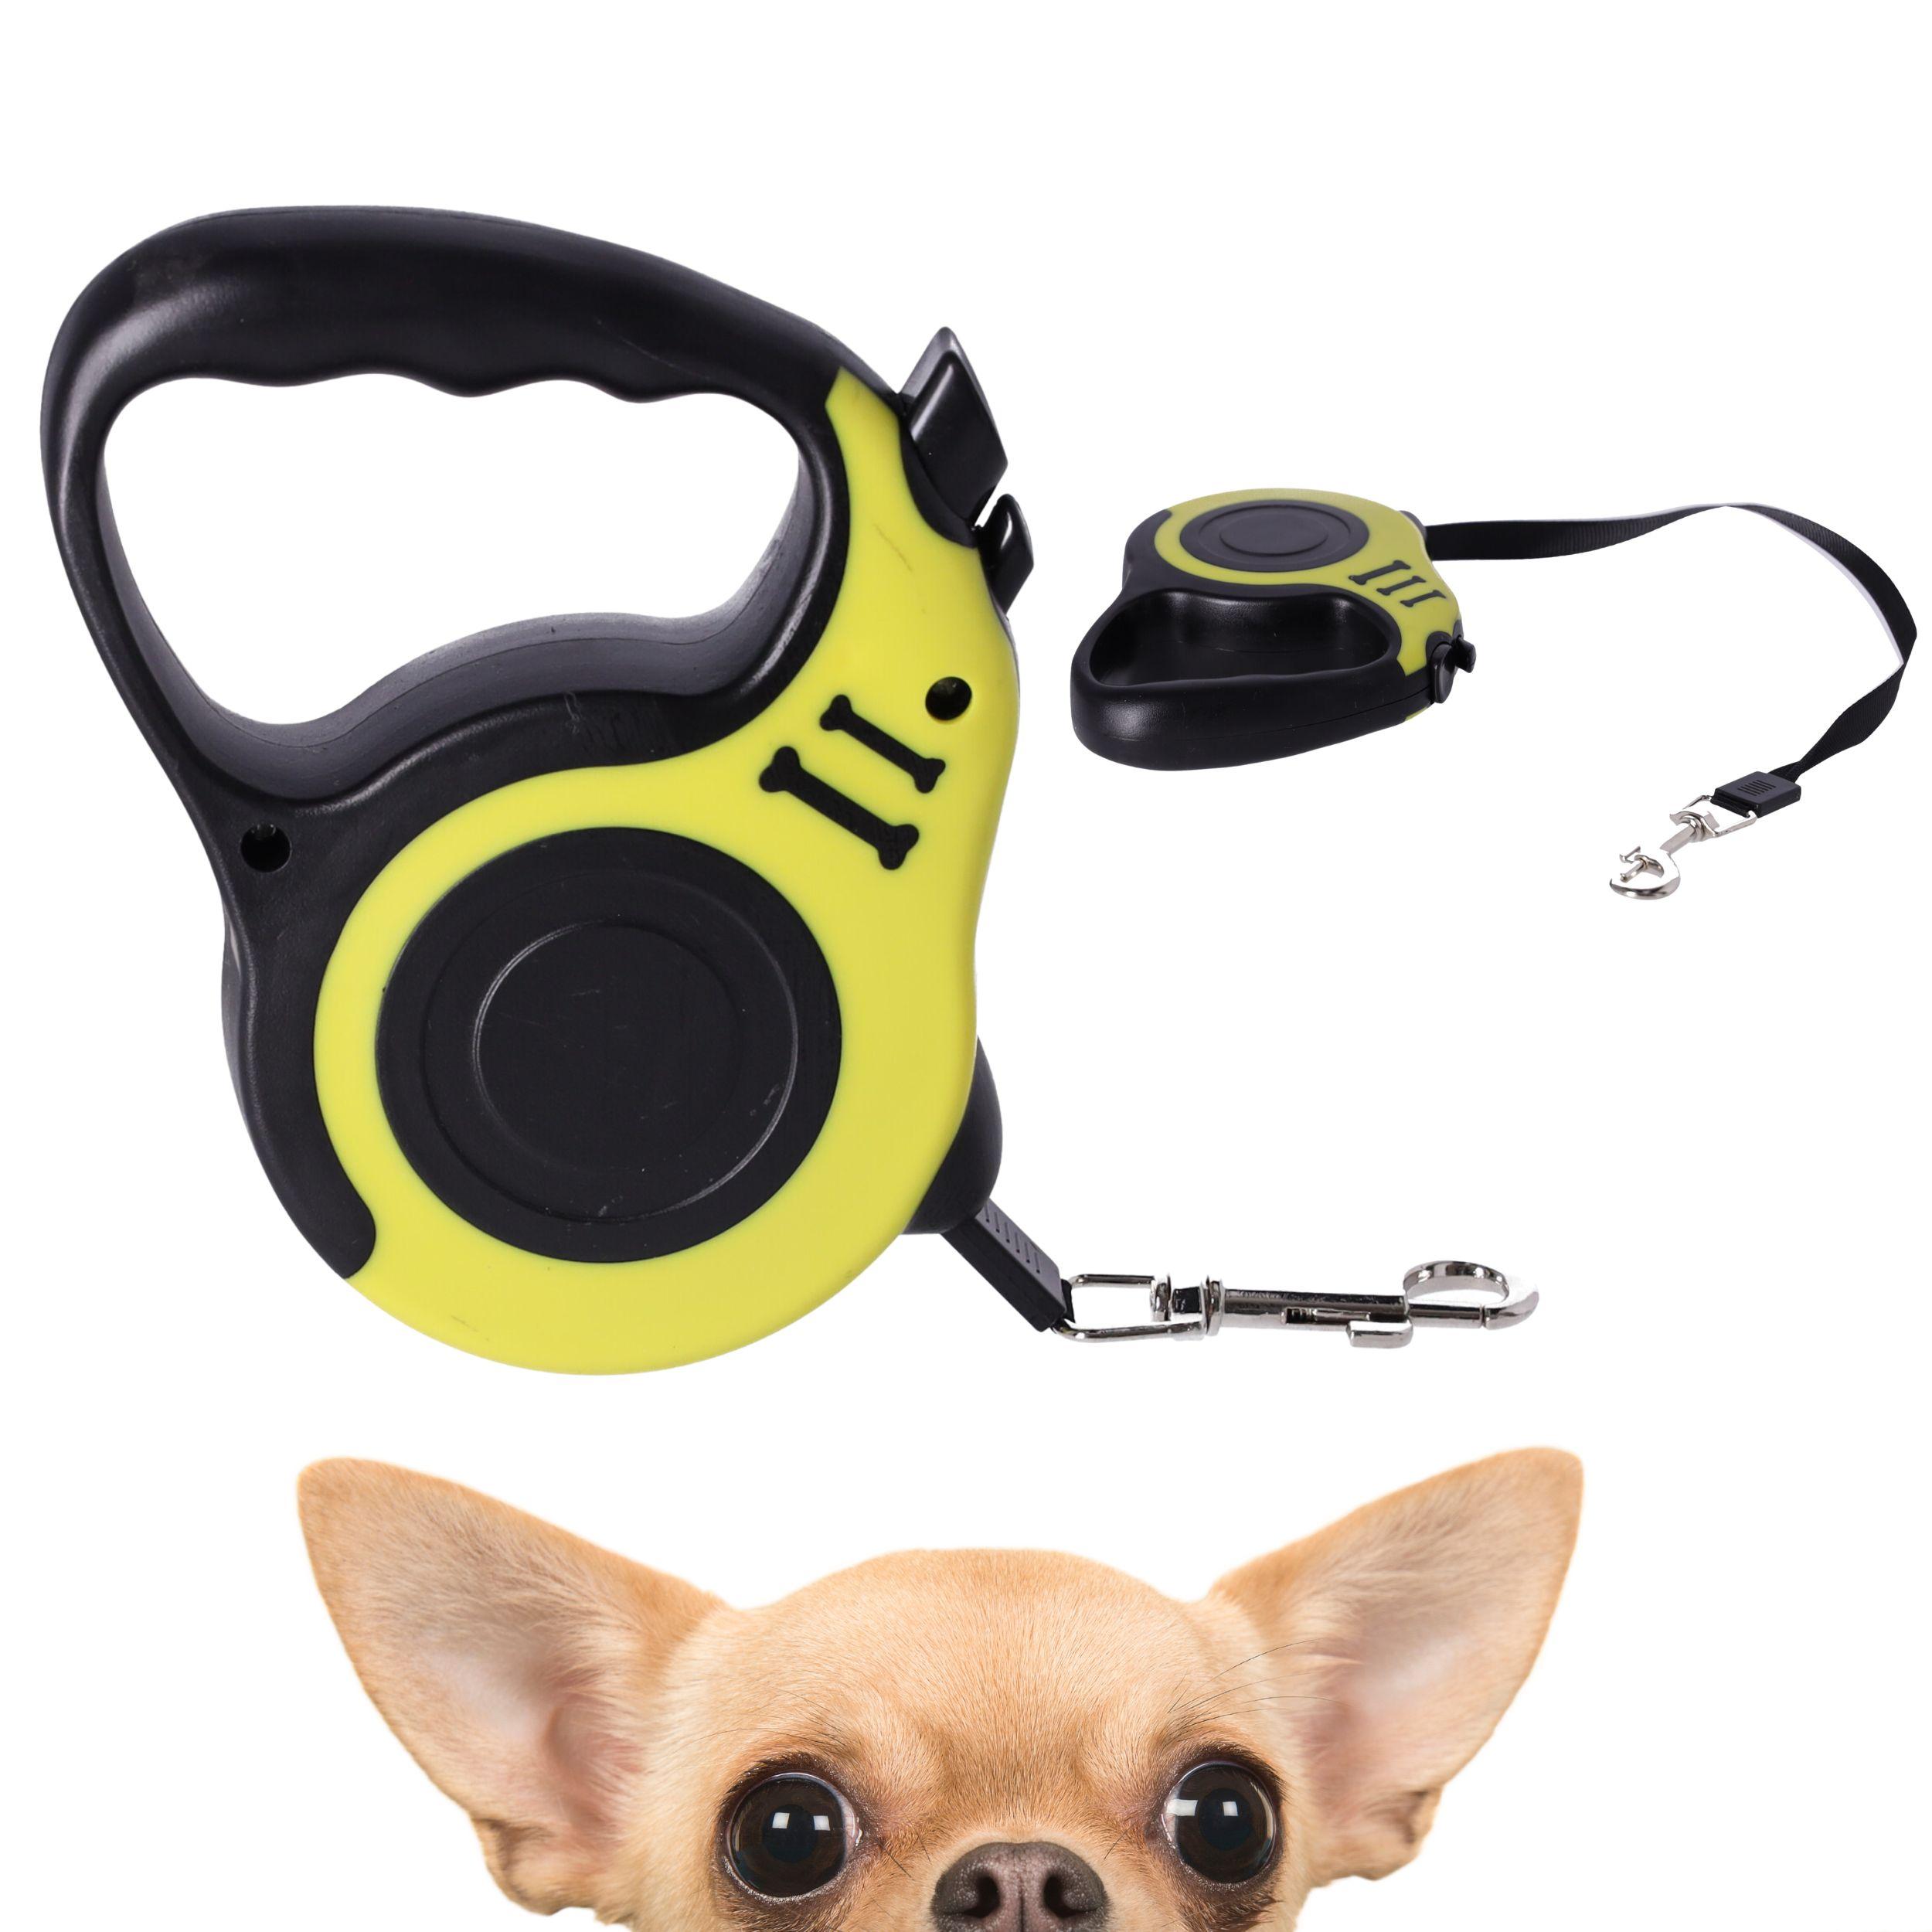 Automatic dog leash / tape leash - L. 3m, type I